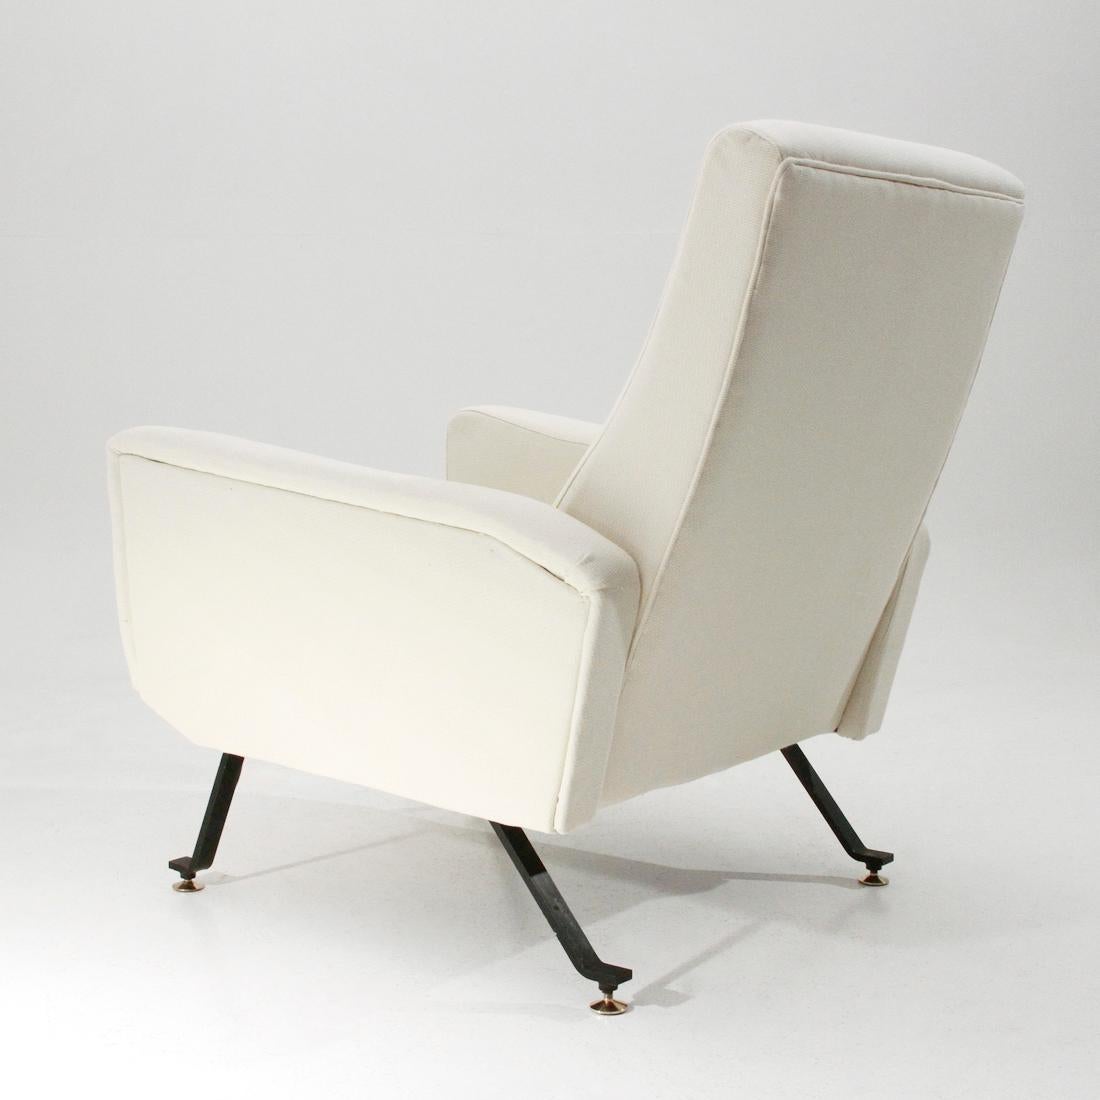 Mid-20th Century Midcentury Italian White Fabric Italian Armchair, 1950s